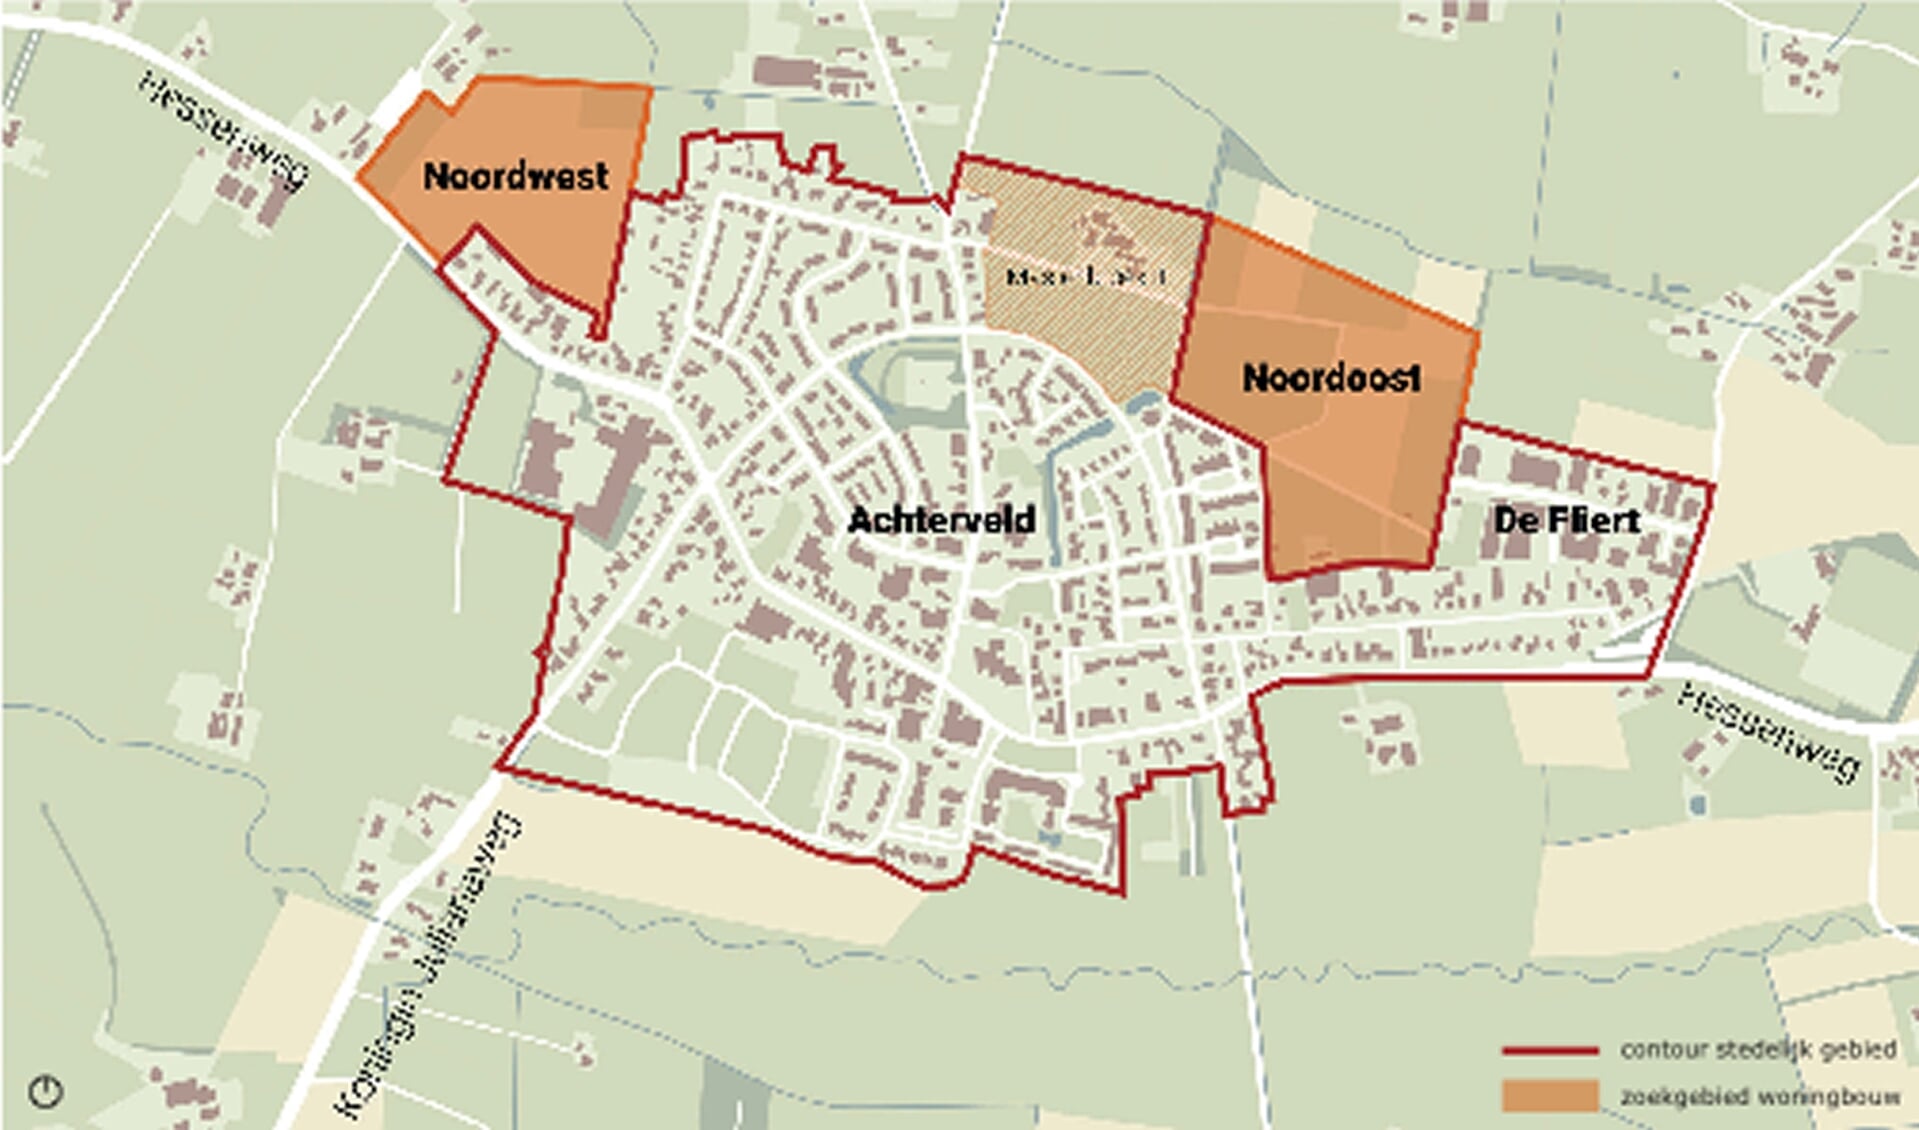 De zoekgebieden voor woningbouw in Achterveld. Het perceel van de bezwaarmaker ligt in het gebied at op de kaart 'noordwest' is genoemd.